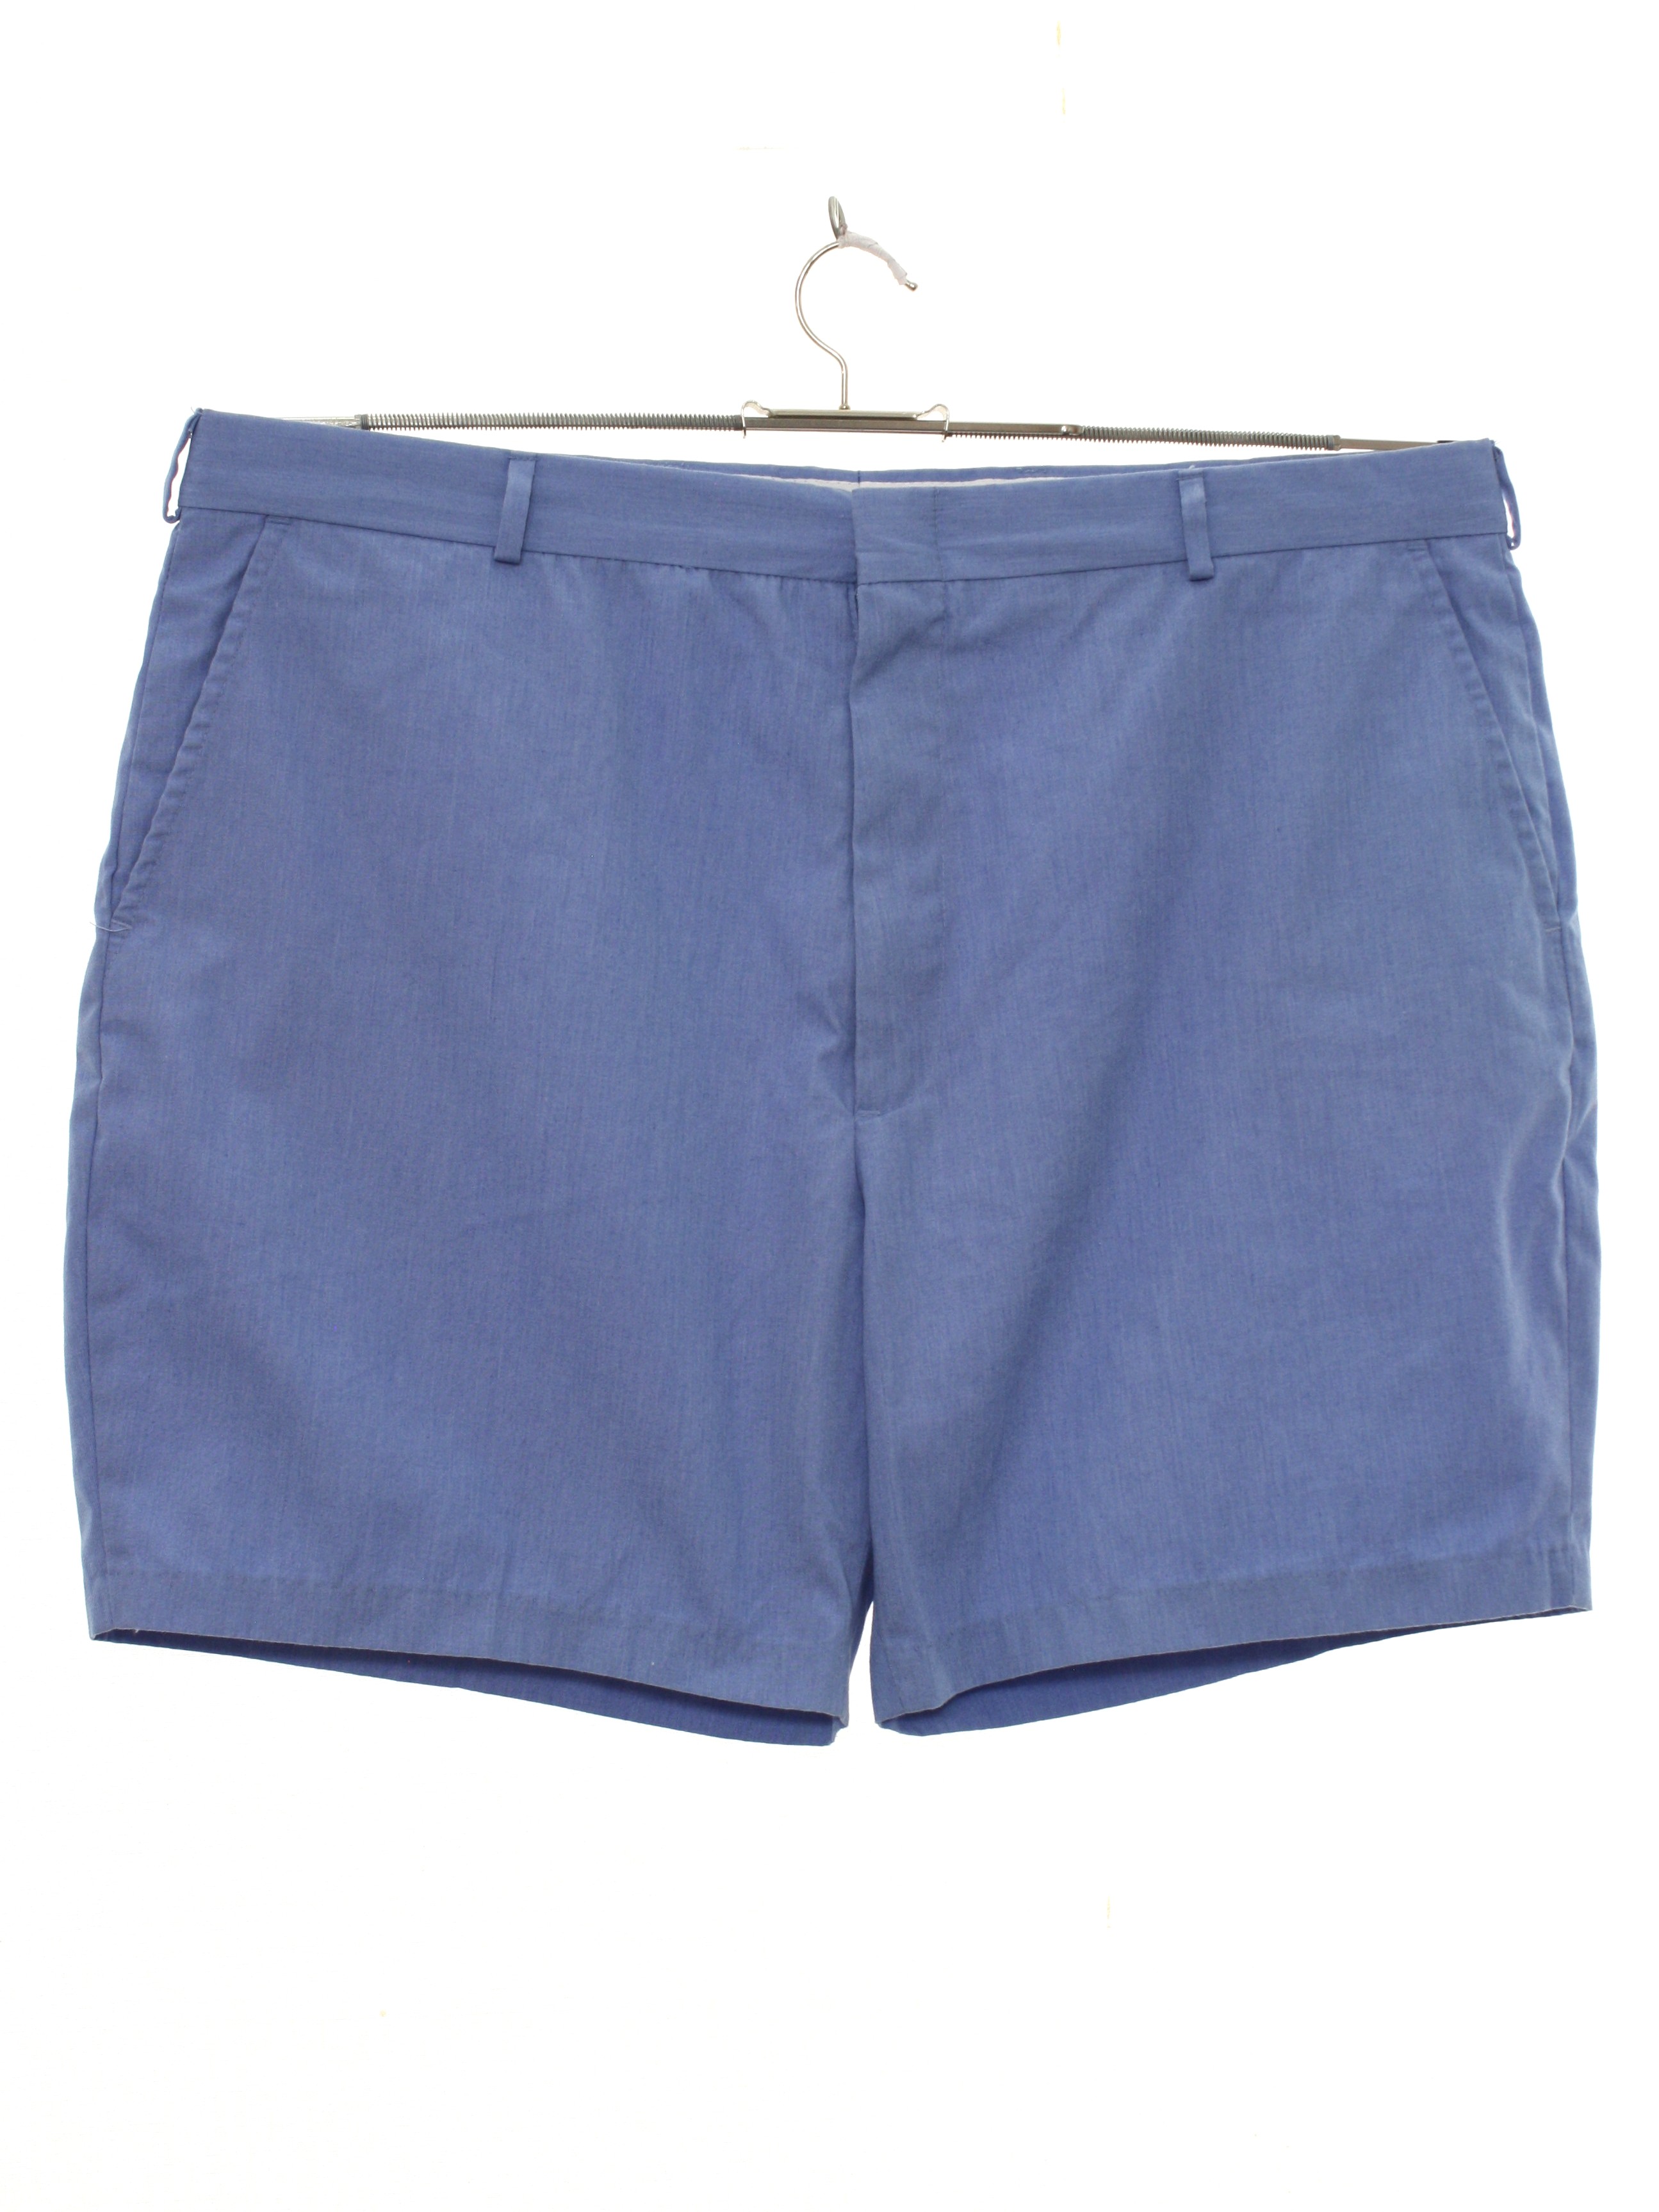 1980's Shorts (Missing Label): 80s -Missing Label- Mens light blue ...